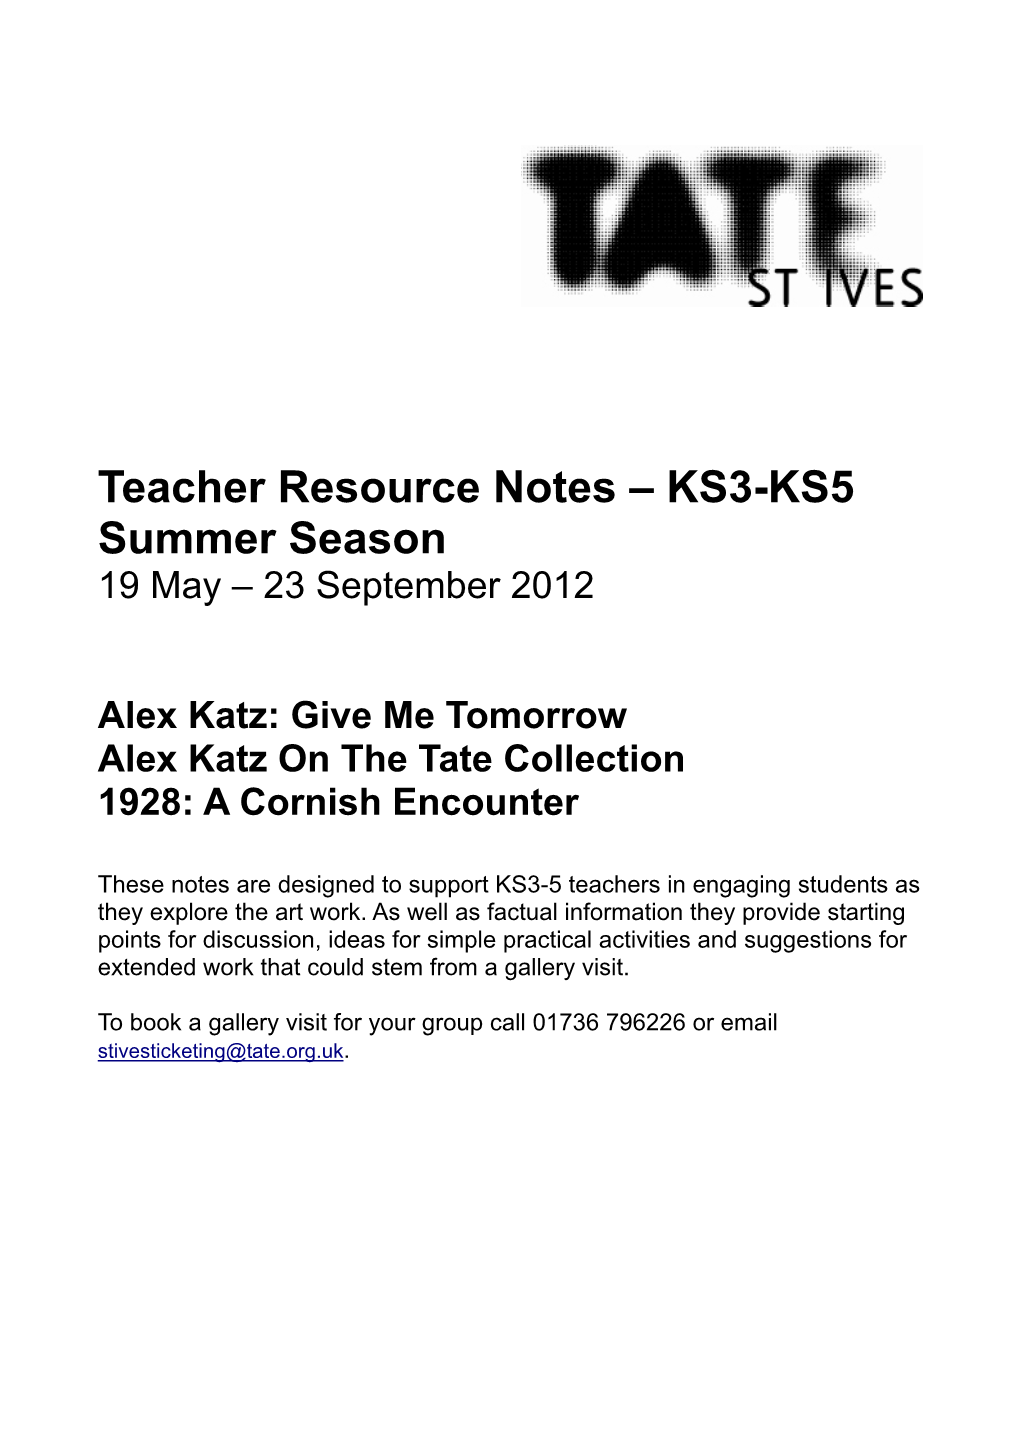 KS3-KS5 Summer Season 19 May – 23 September 2012